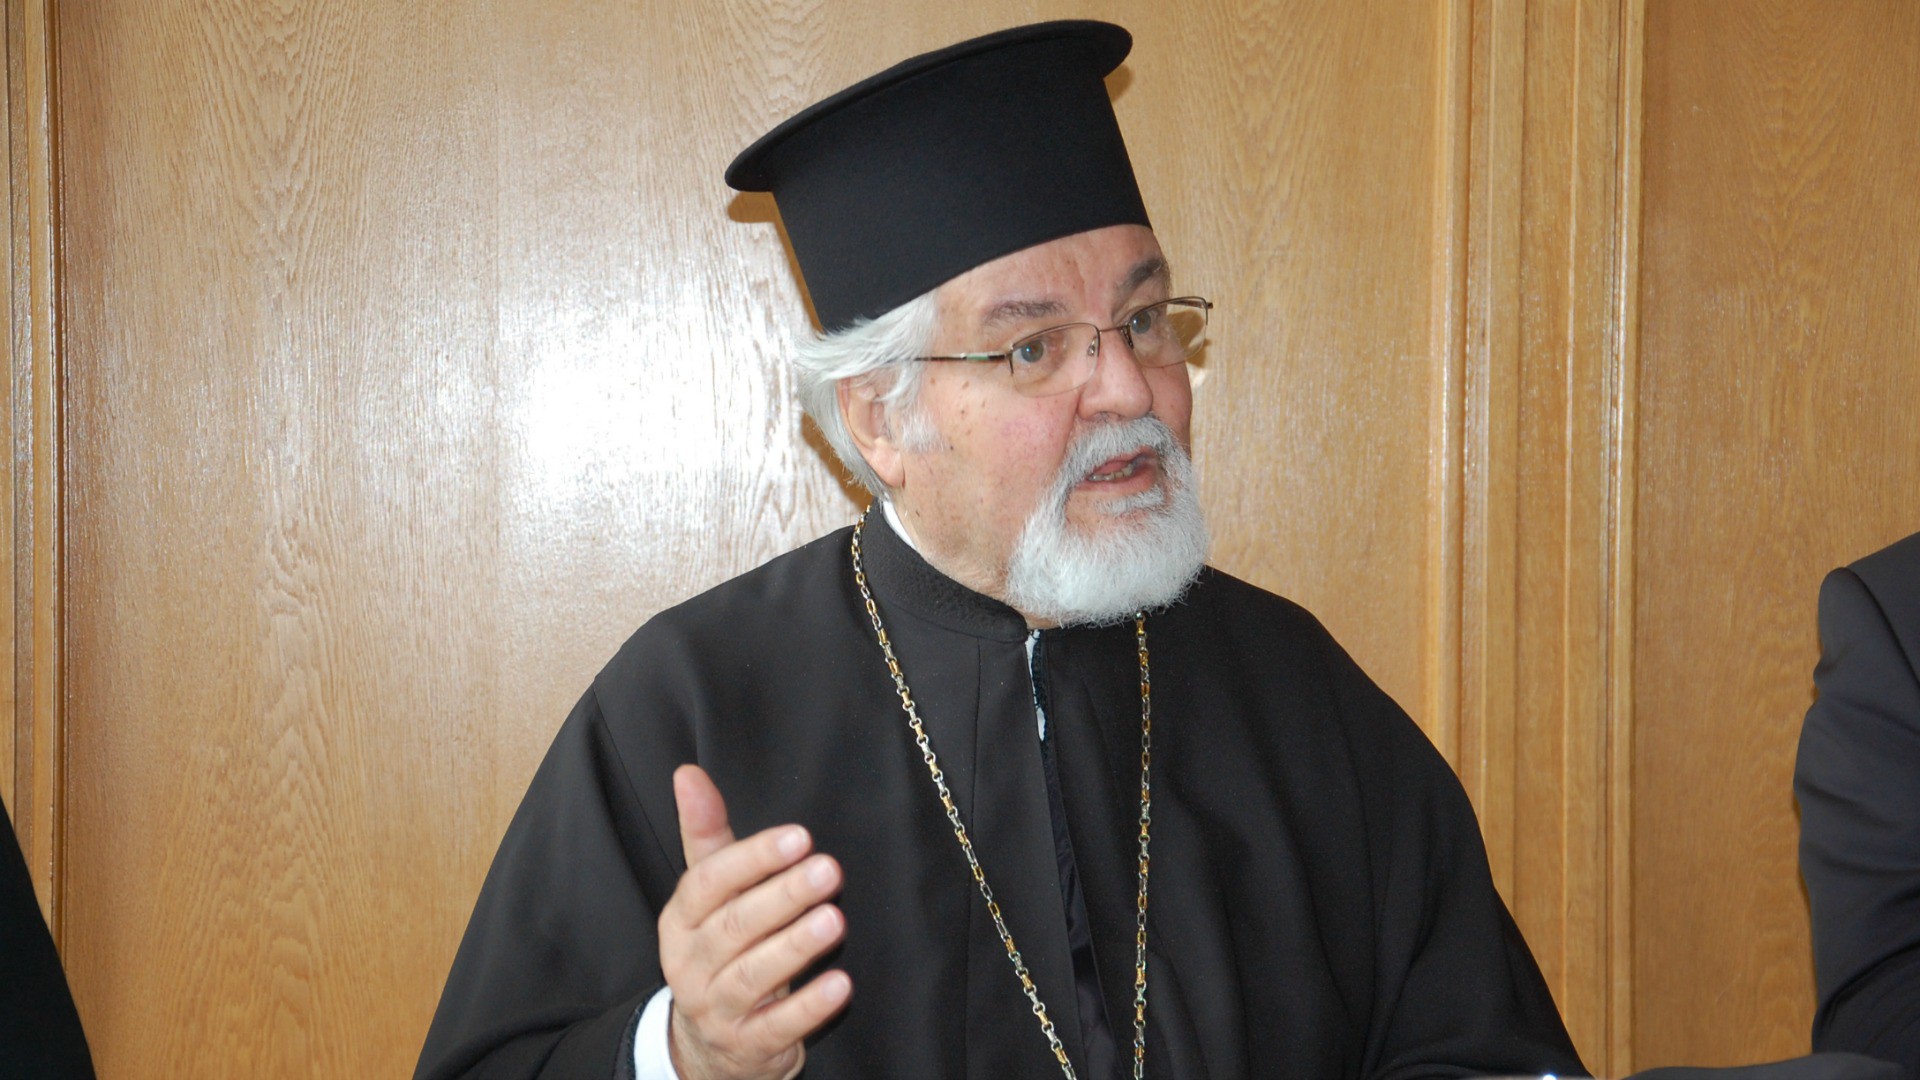 Métropolite Jérémie, directeur du Centre orthodoxe de Chambésy, à Genève  (Photo: Jacques Berset)